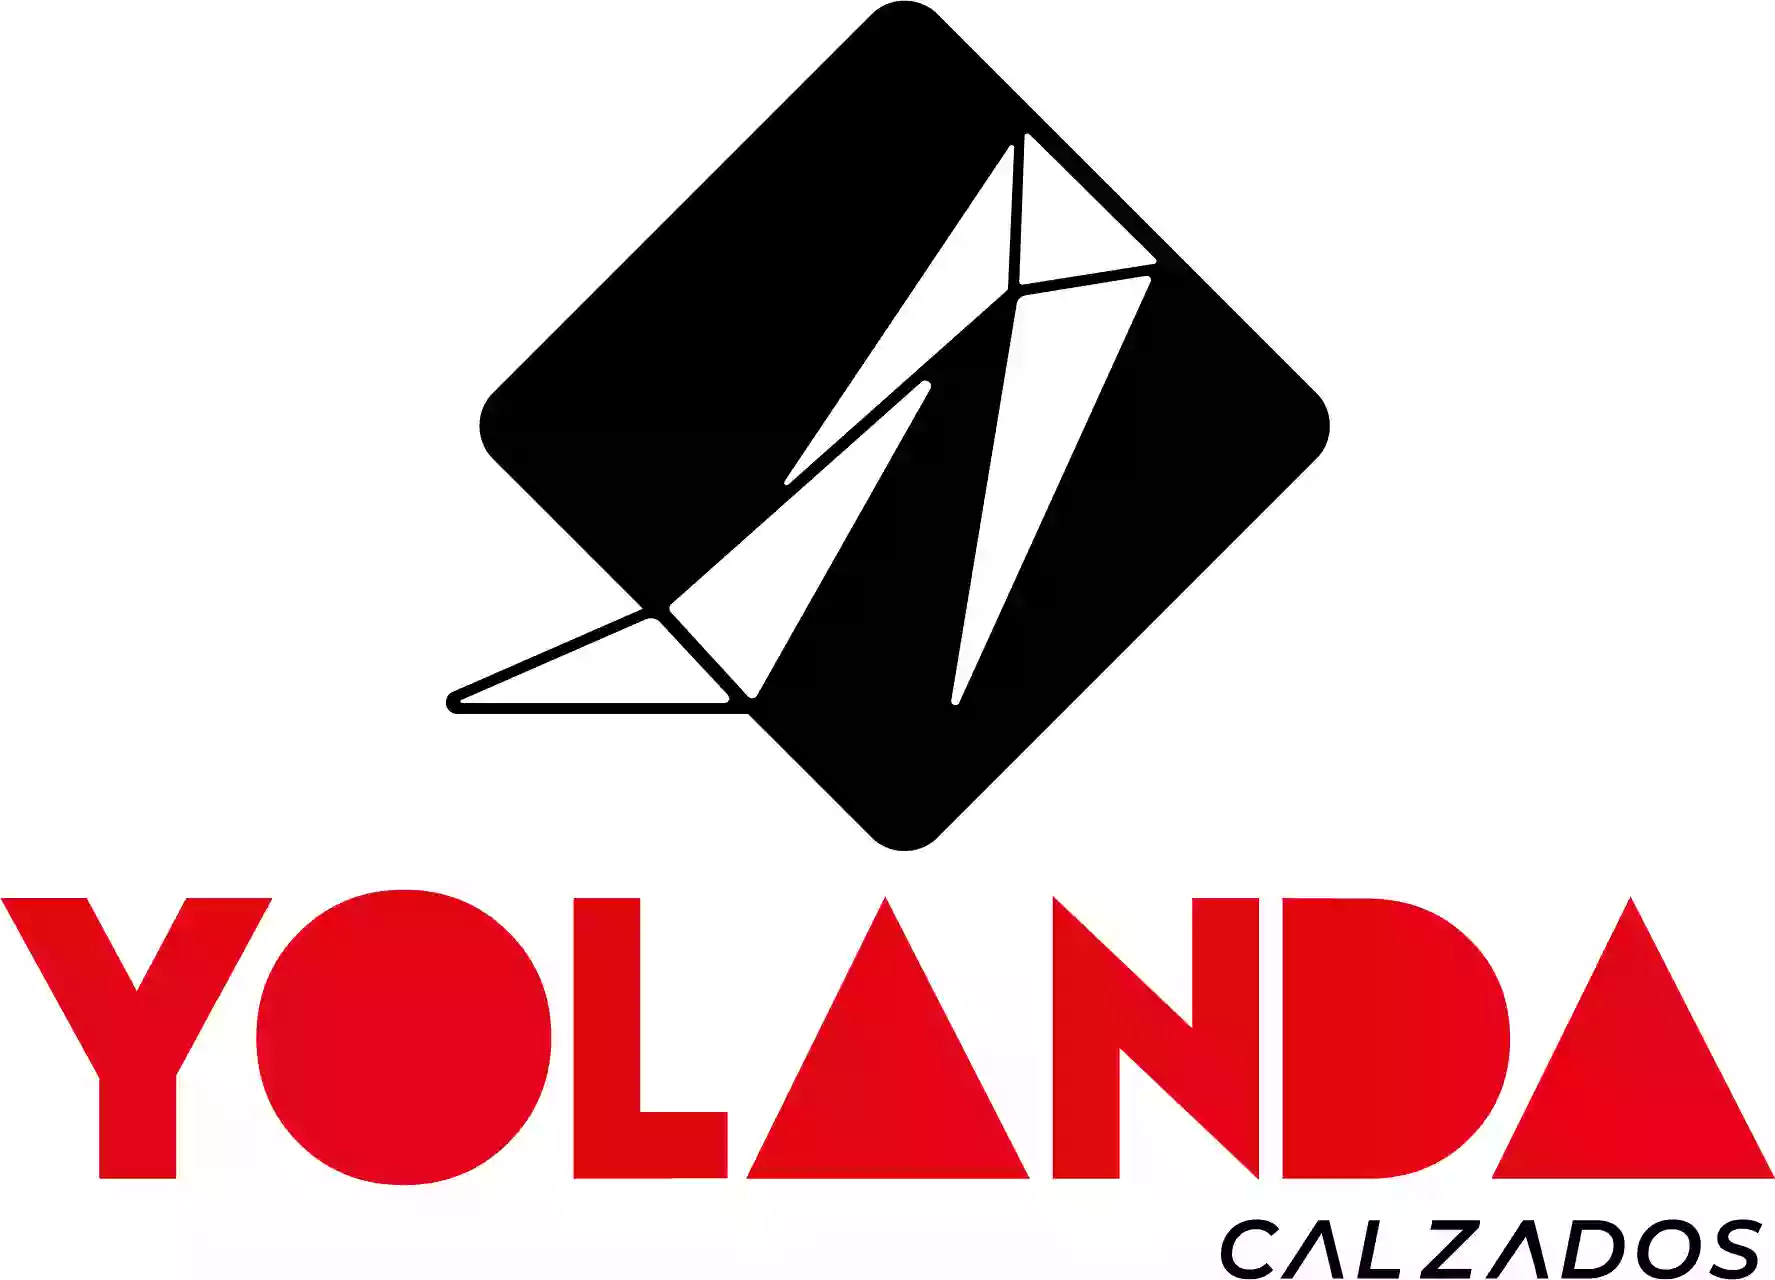 Yolanda Calzados